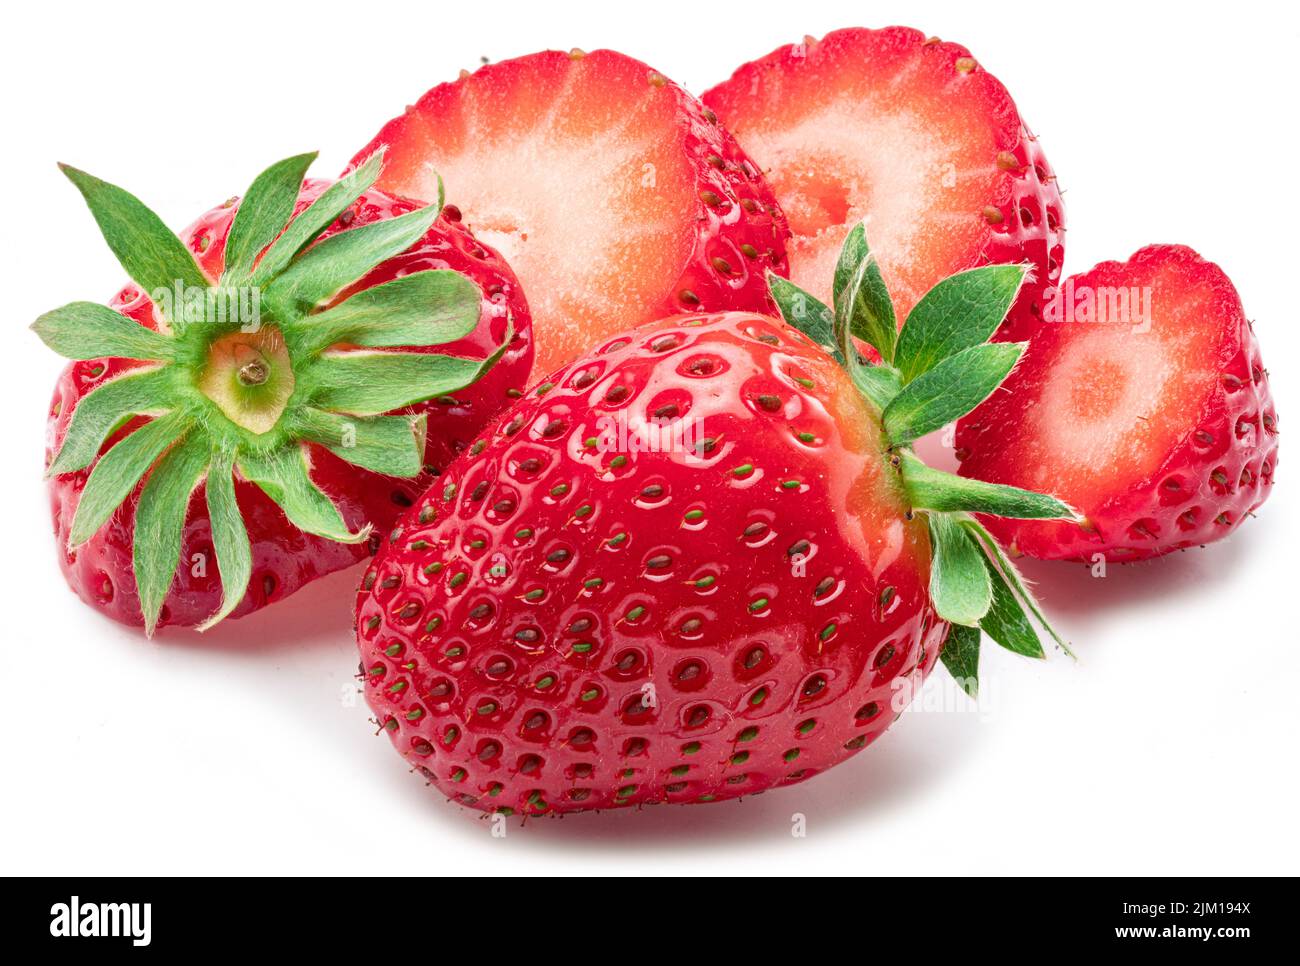 Chopped strawberry isolated on white background. Stock Photo